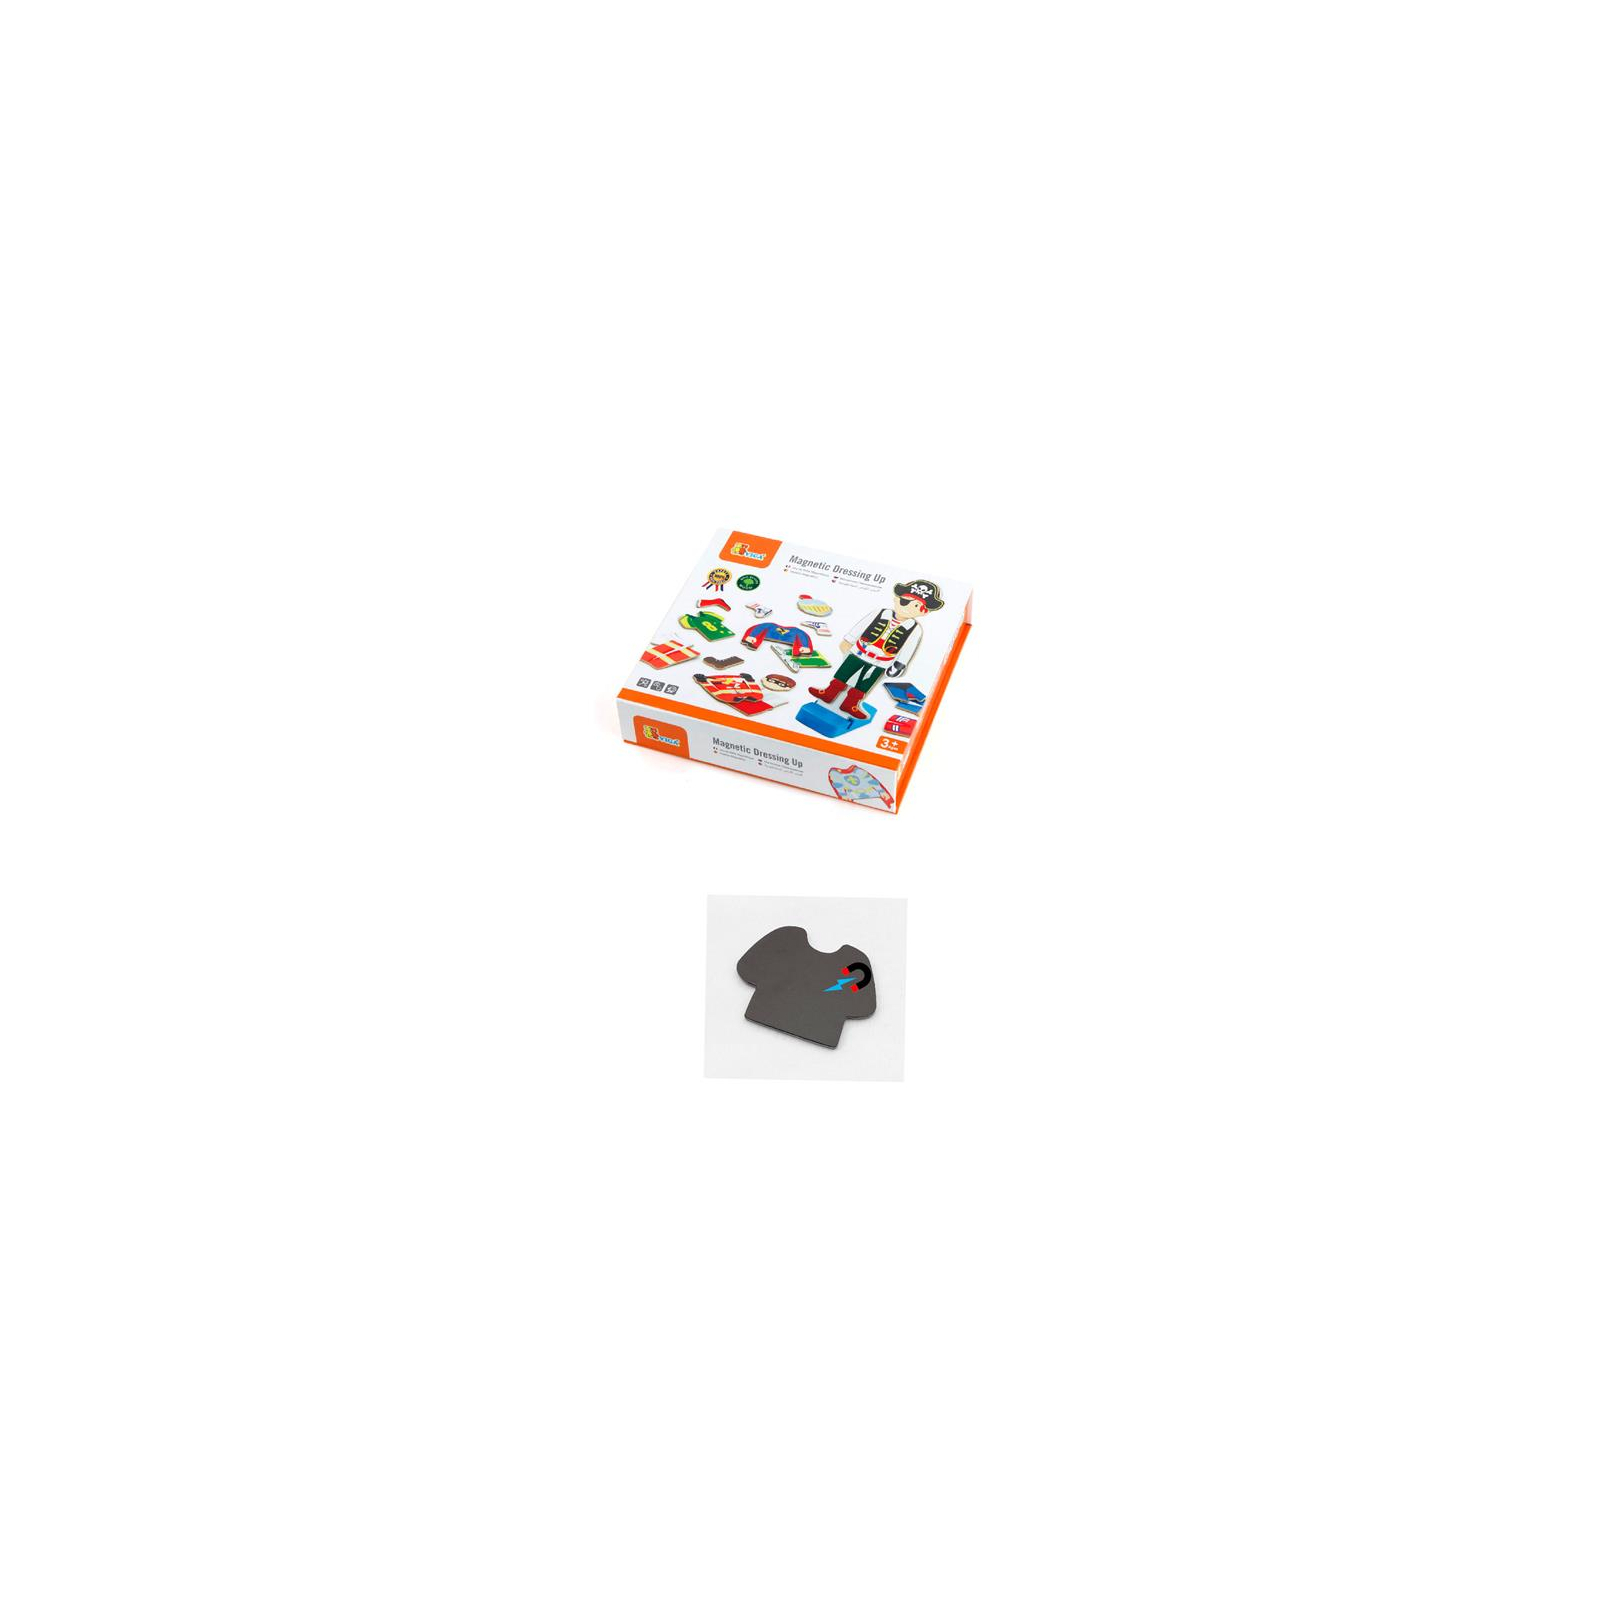 Игровой набор Viga Toys Гардероб мальчика на магнитах (50021) изображение 3